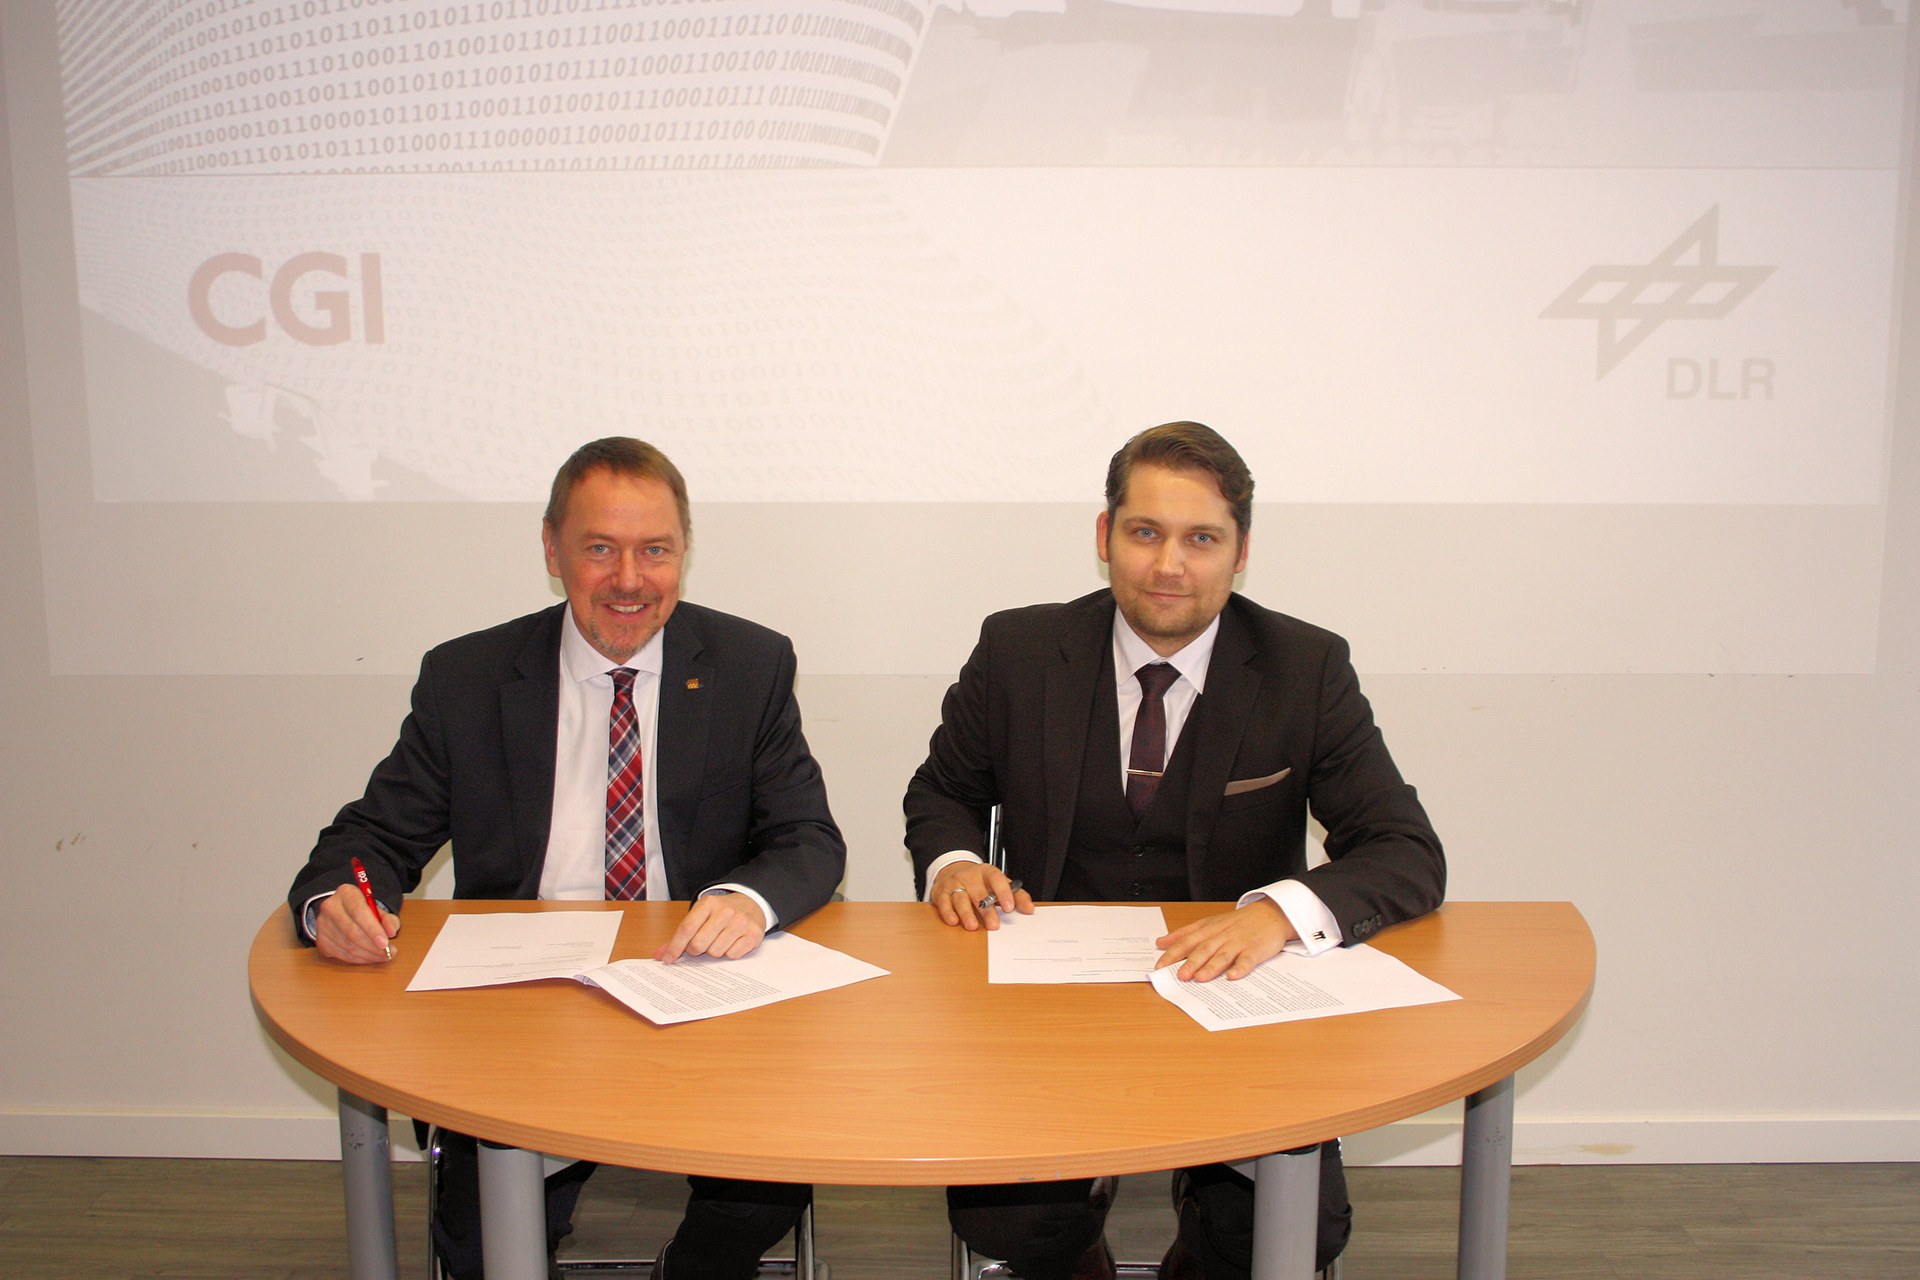 Unterzeichnung zur Kooperation zwischen CGI Deutschland und DLR